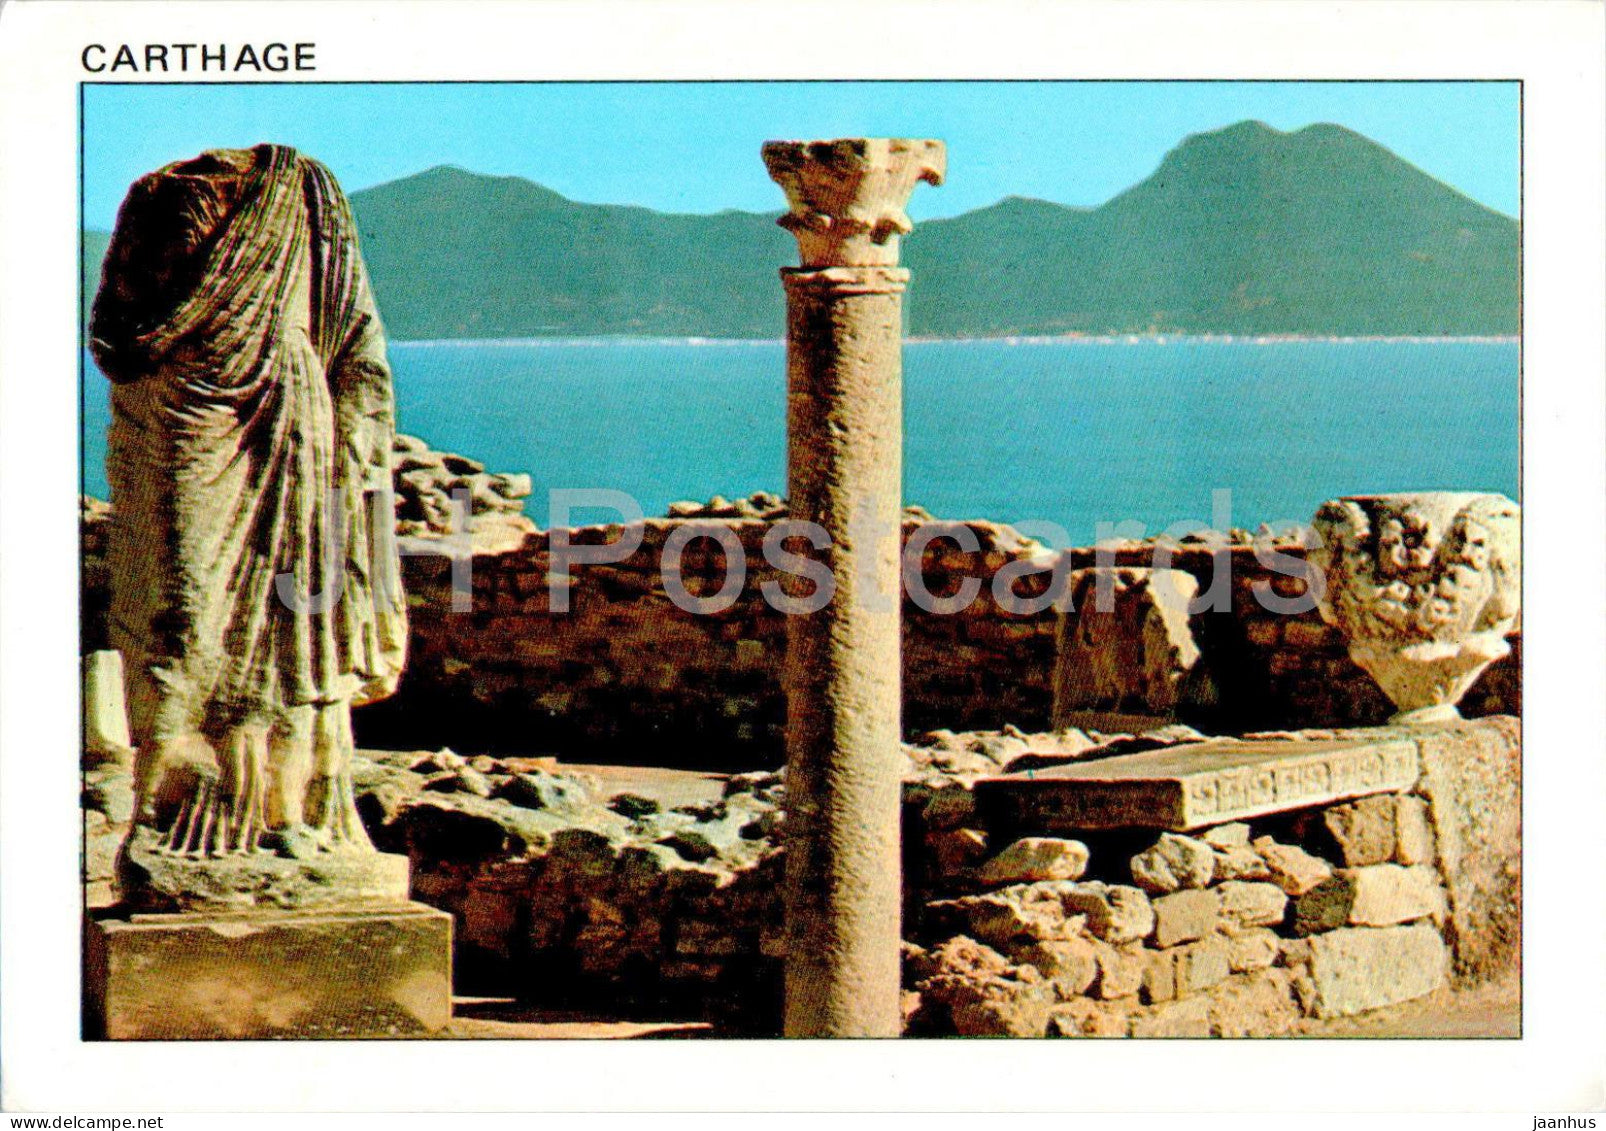 Carthage - l'Antiquarium - Antiquarium - ancient world - 51 - Tunisia - used - JH Postcards